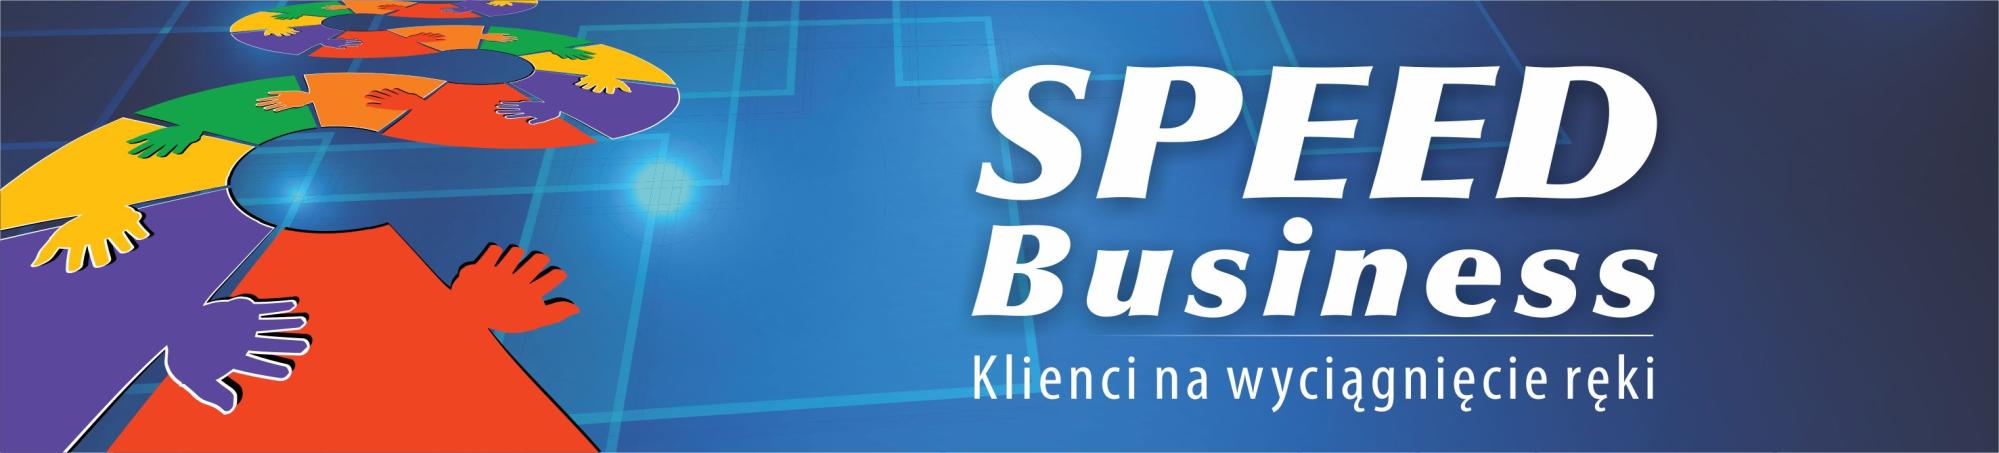 SPEED BUSINESS - zdobywamy klientów SPEED Business jest narzędziem w stylu networking, które pozwala na zdobycie nowych kontaktów biznesowych.